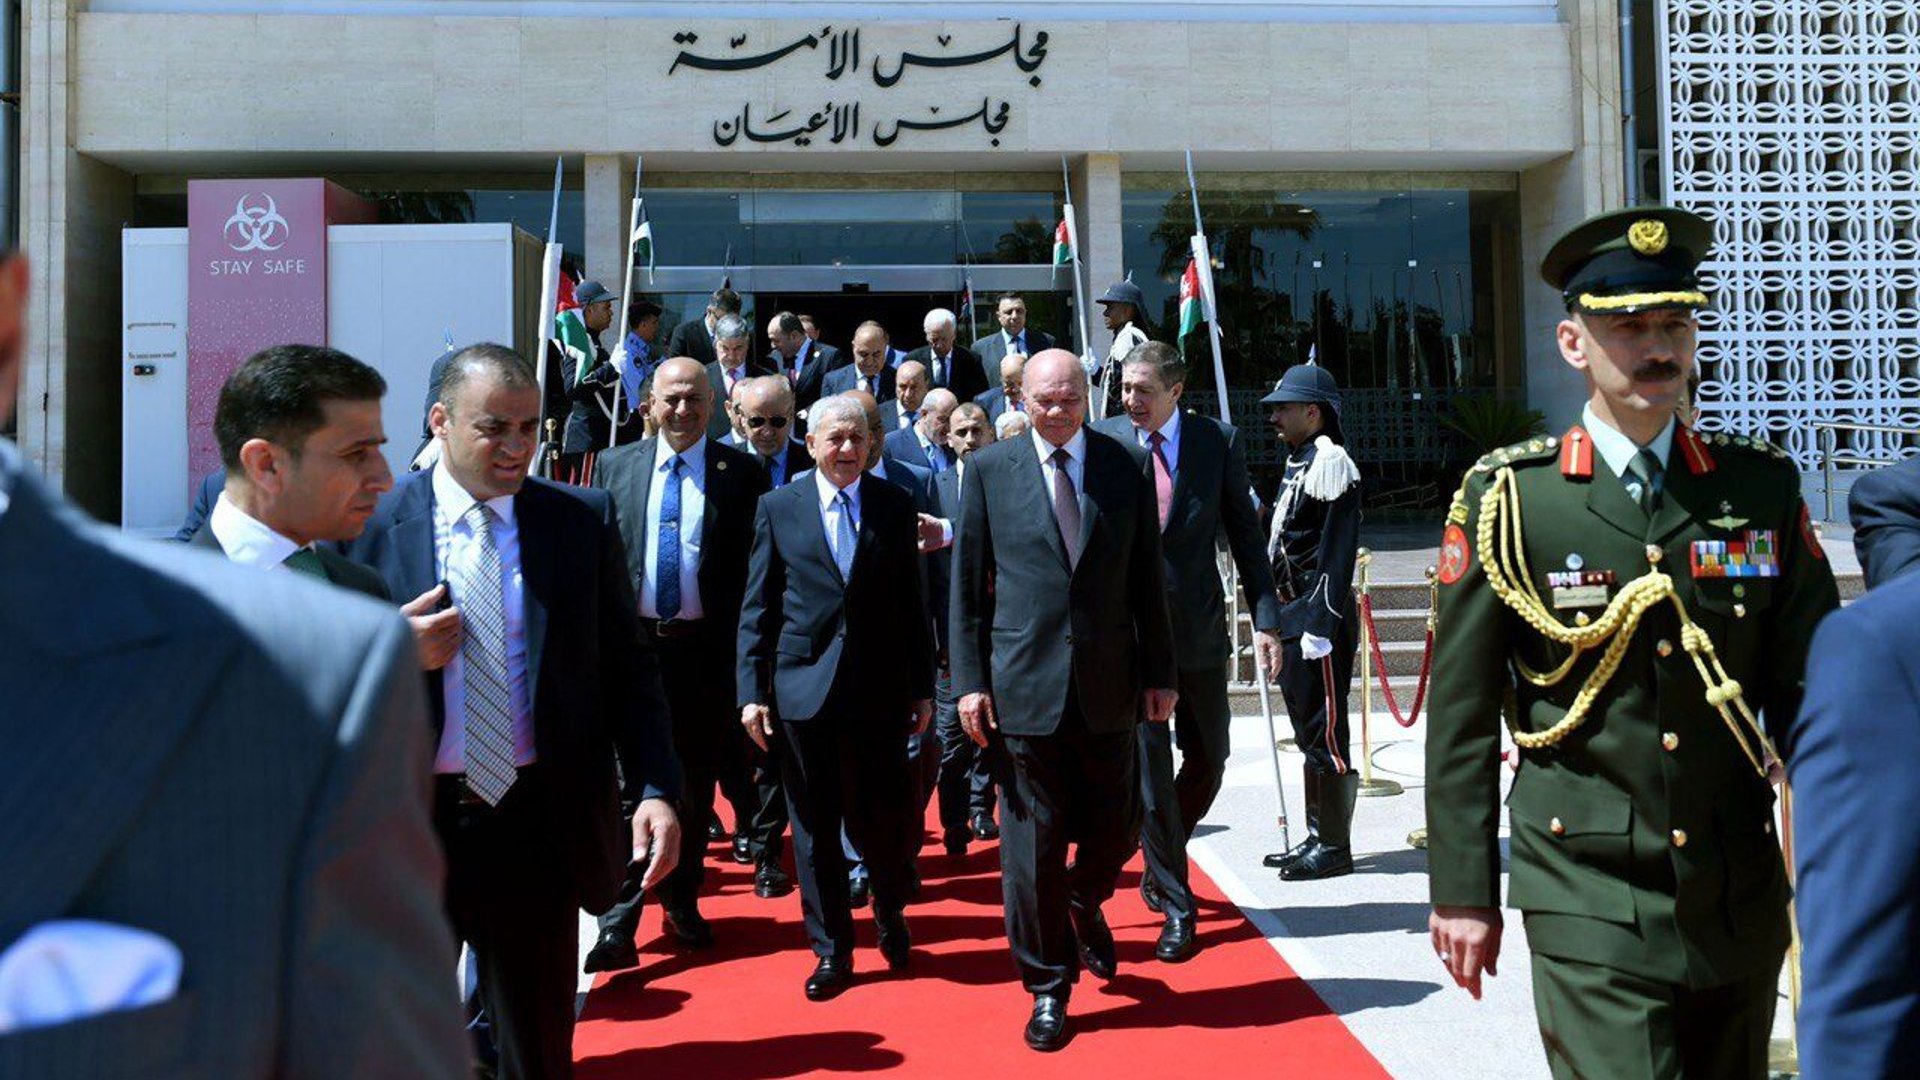 صور: الرئيس رشيد في مجلس الأعيان الأردني وحديث عن الروابط التاريخية بين البلدين